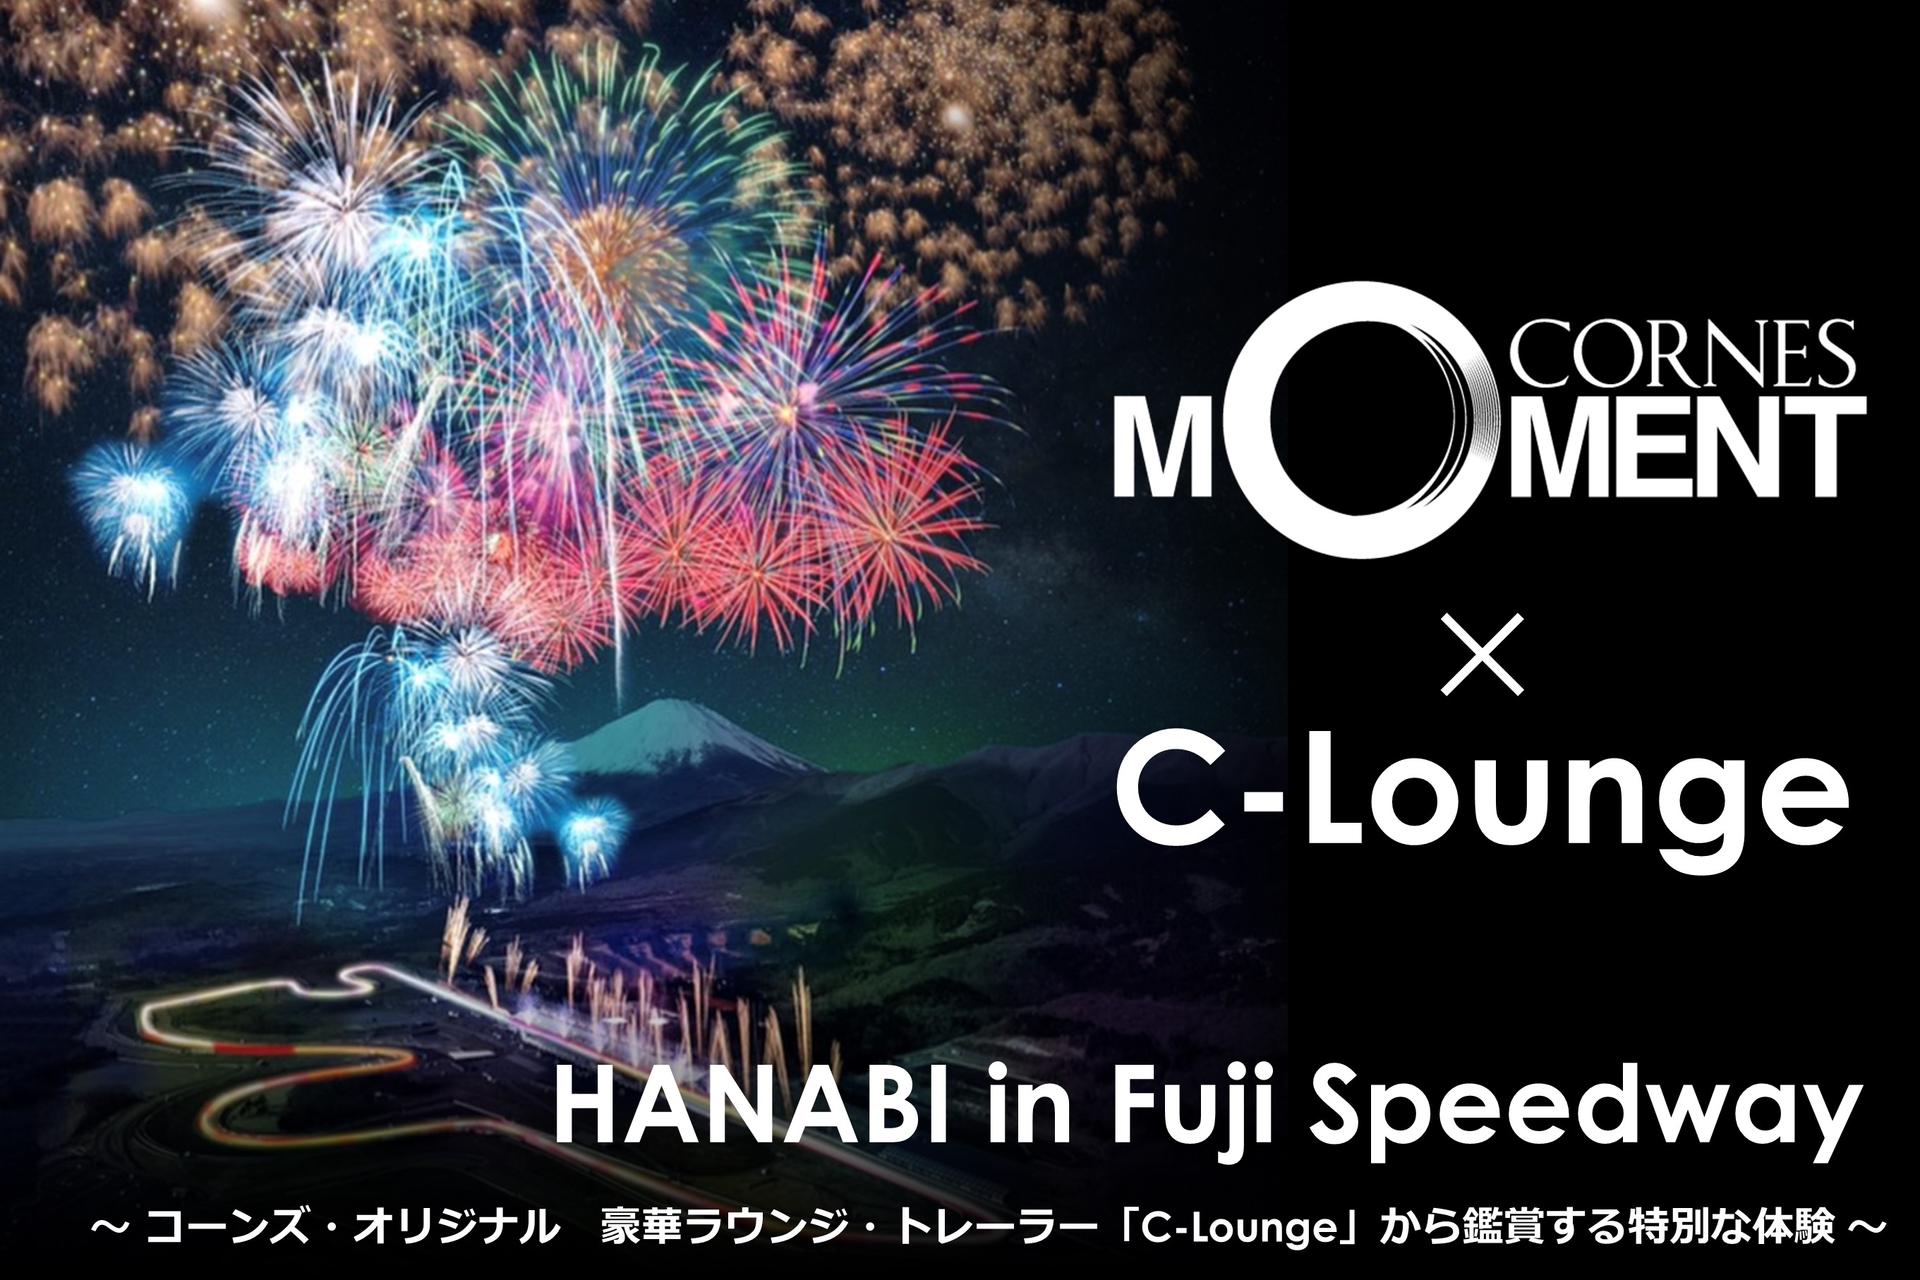 【満員御礼｜キャンセル待ち受付中】<br>CORNES MOMENT x C-Lounge｜HANABI in Fuji Speedway<br>
～コーンズ・オリジナル｜豪華ラウンジ・トレーラー「C-Lounge」から鑑賞する特別な体験～